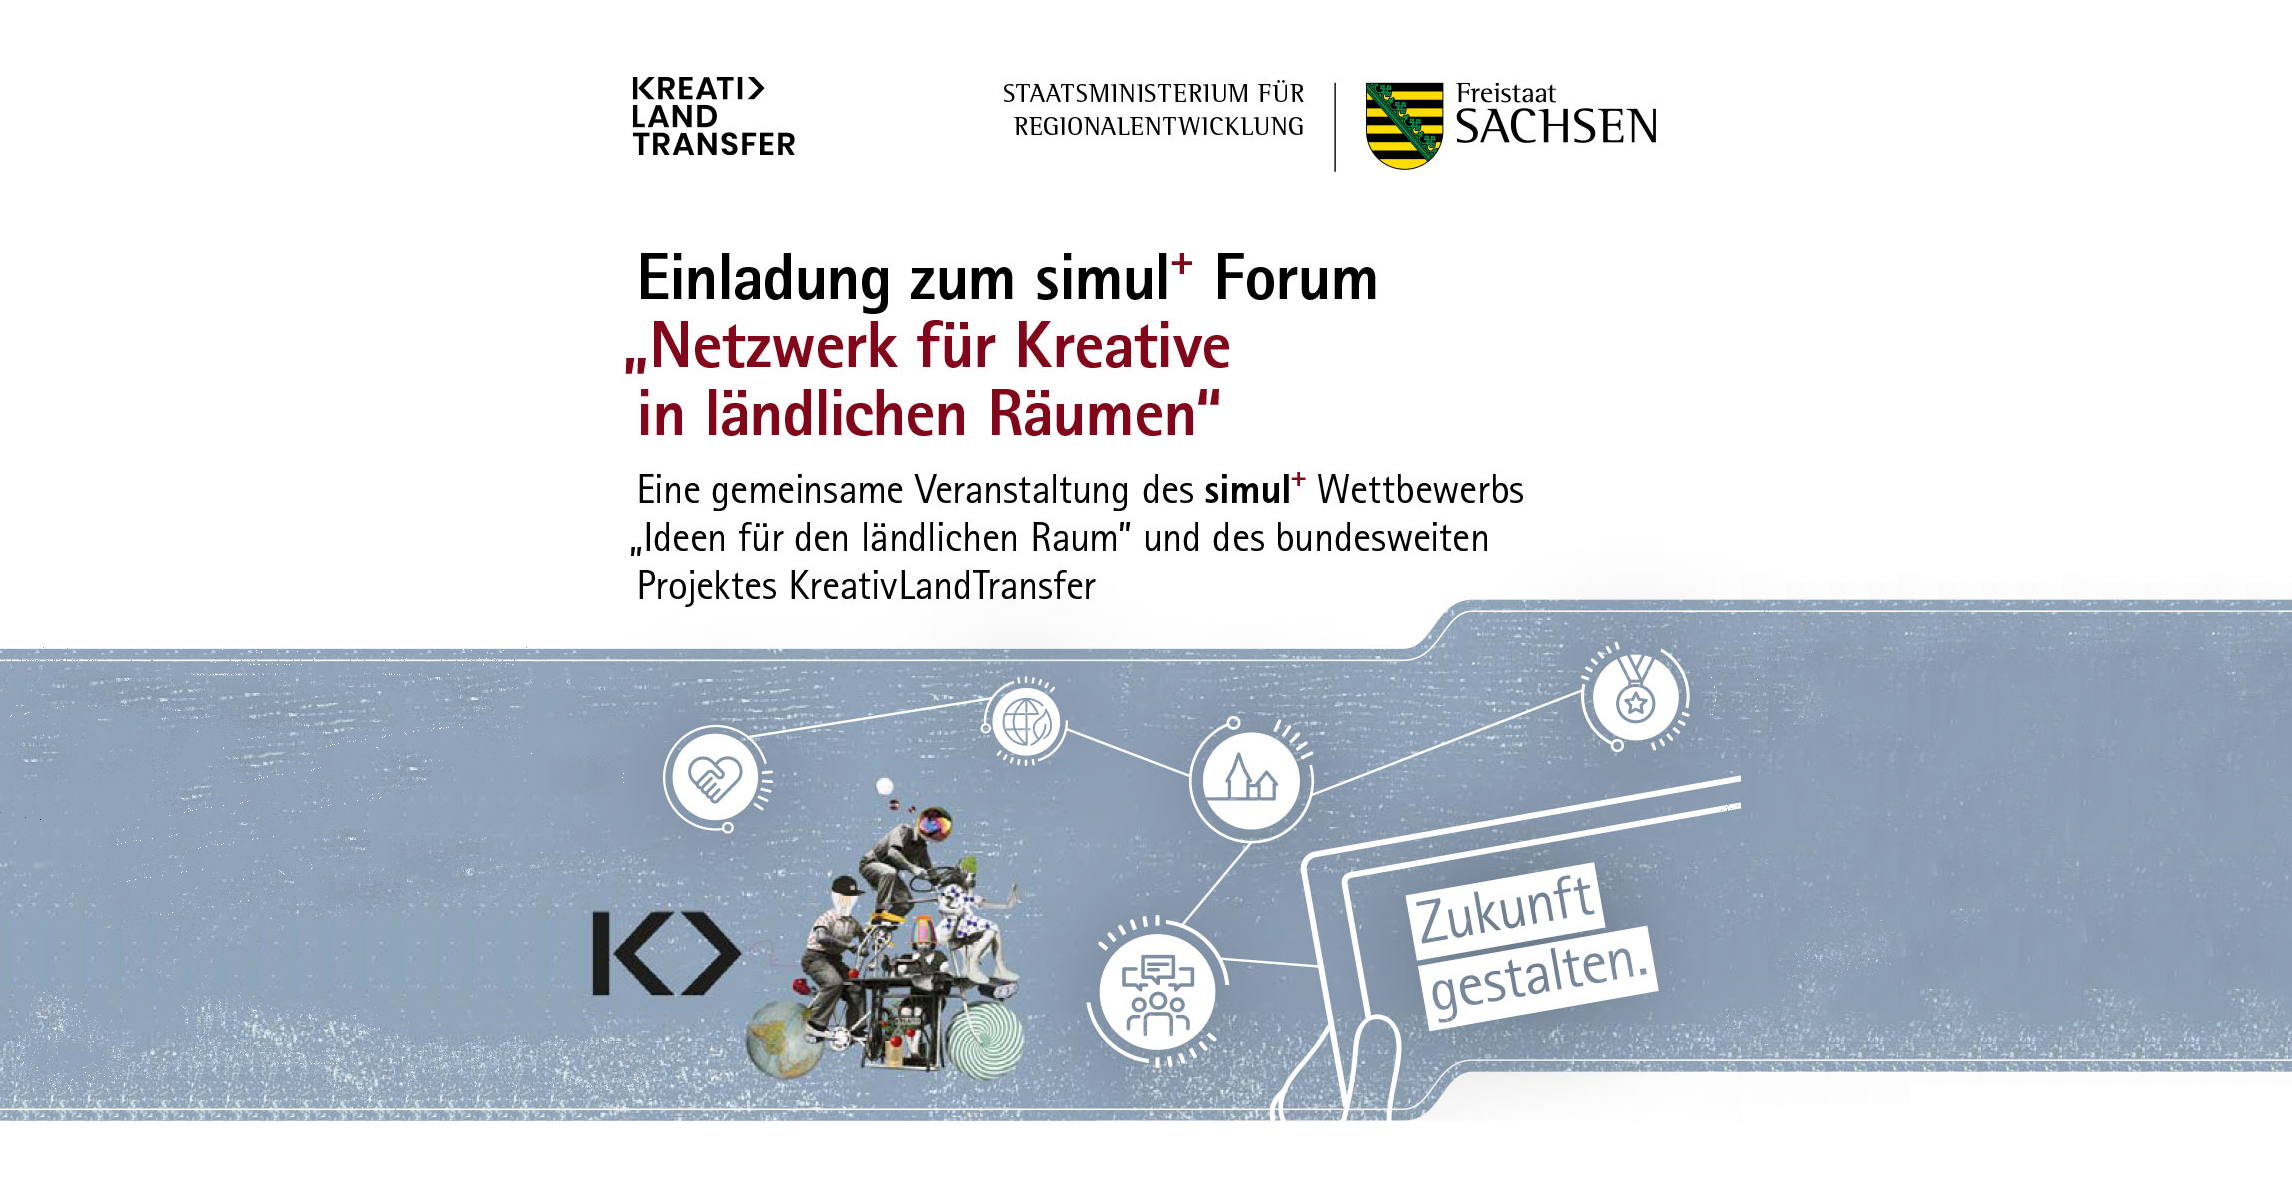 Einladung zum simul+ Forum Netzwerk für Kreative in ländlichen Räumen am 15.10.2020 in Flöha